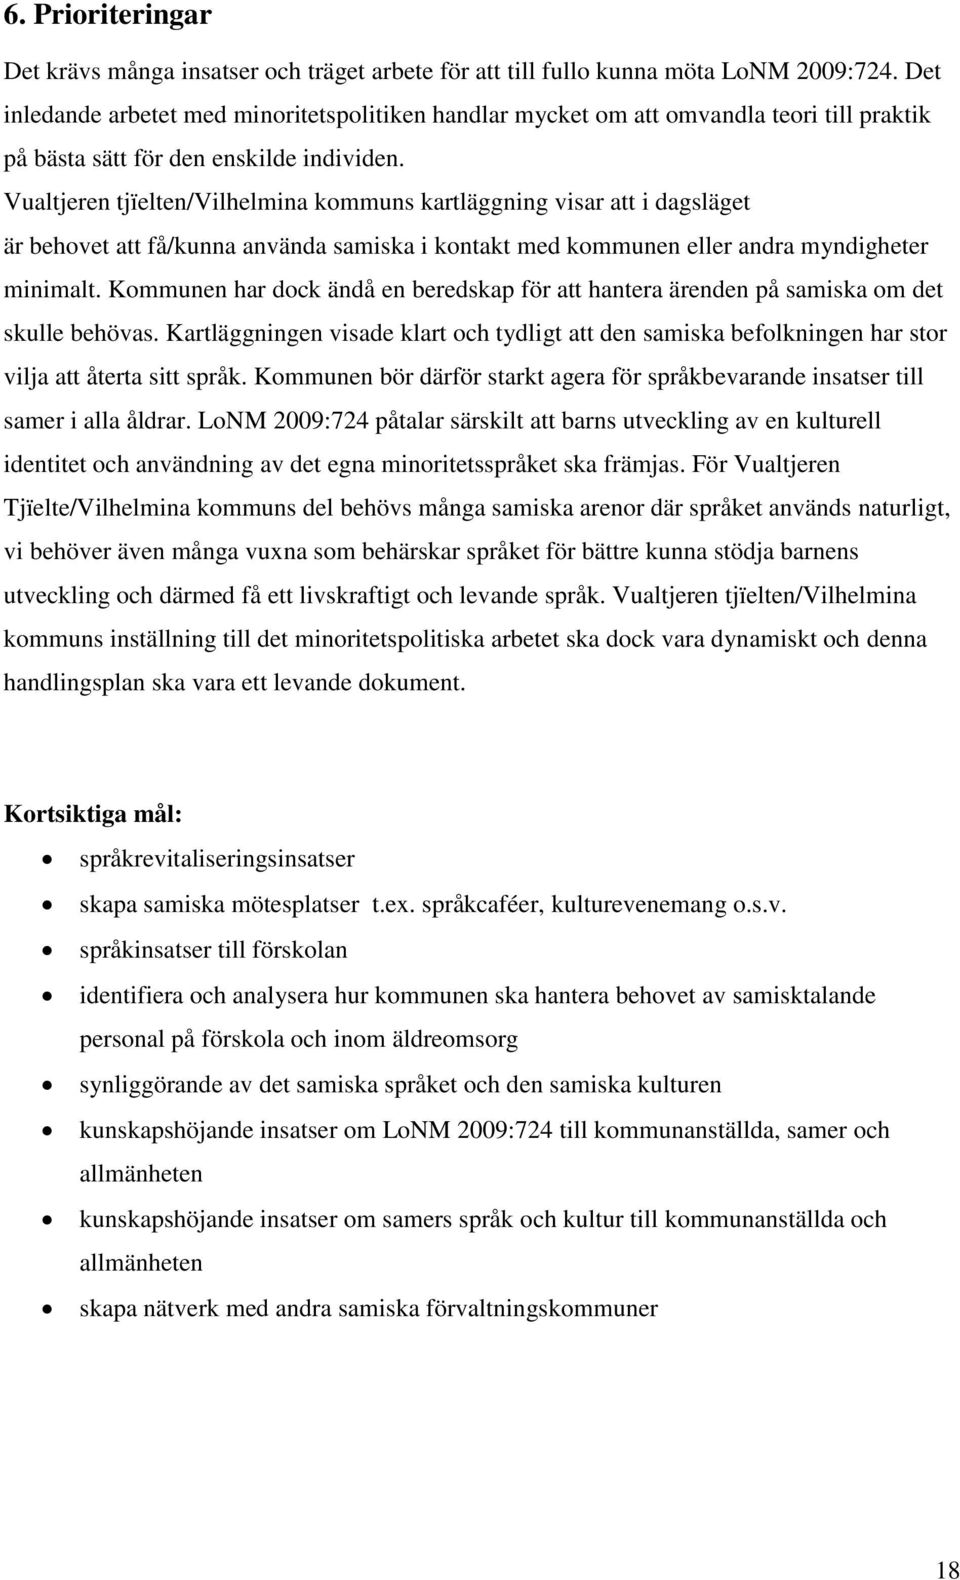 Vualtjeren tjïelten/vilhelmina kommuns kartläggning visar att i dagsläget är behovet att få/kunna använda samiska i kontakt med kommunen eller andra myndigheter minimalt.